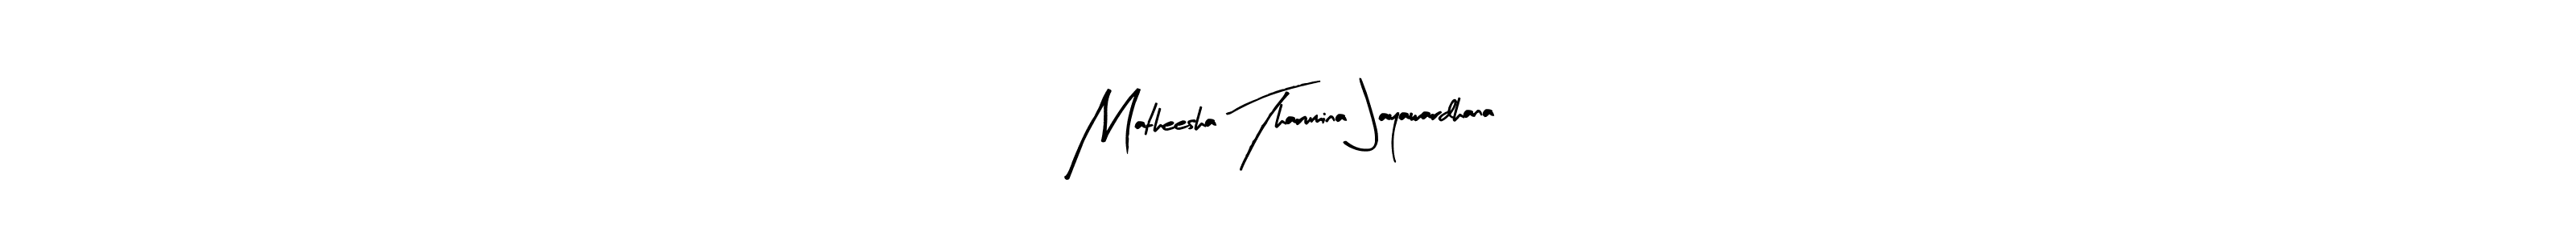 Best and Professional Signature Style for Matheesha Tharumina Jayawardhana. Arty Signature Best Signature Style Collection. Matheesha Tharumina Jayawardhana signature style 8 images and pictures png